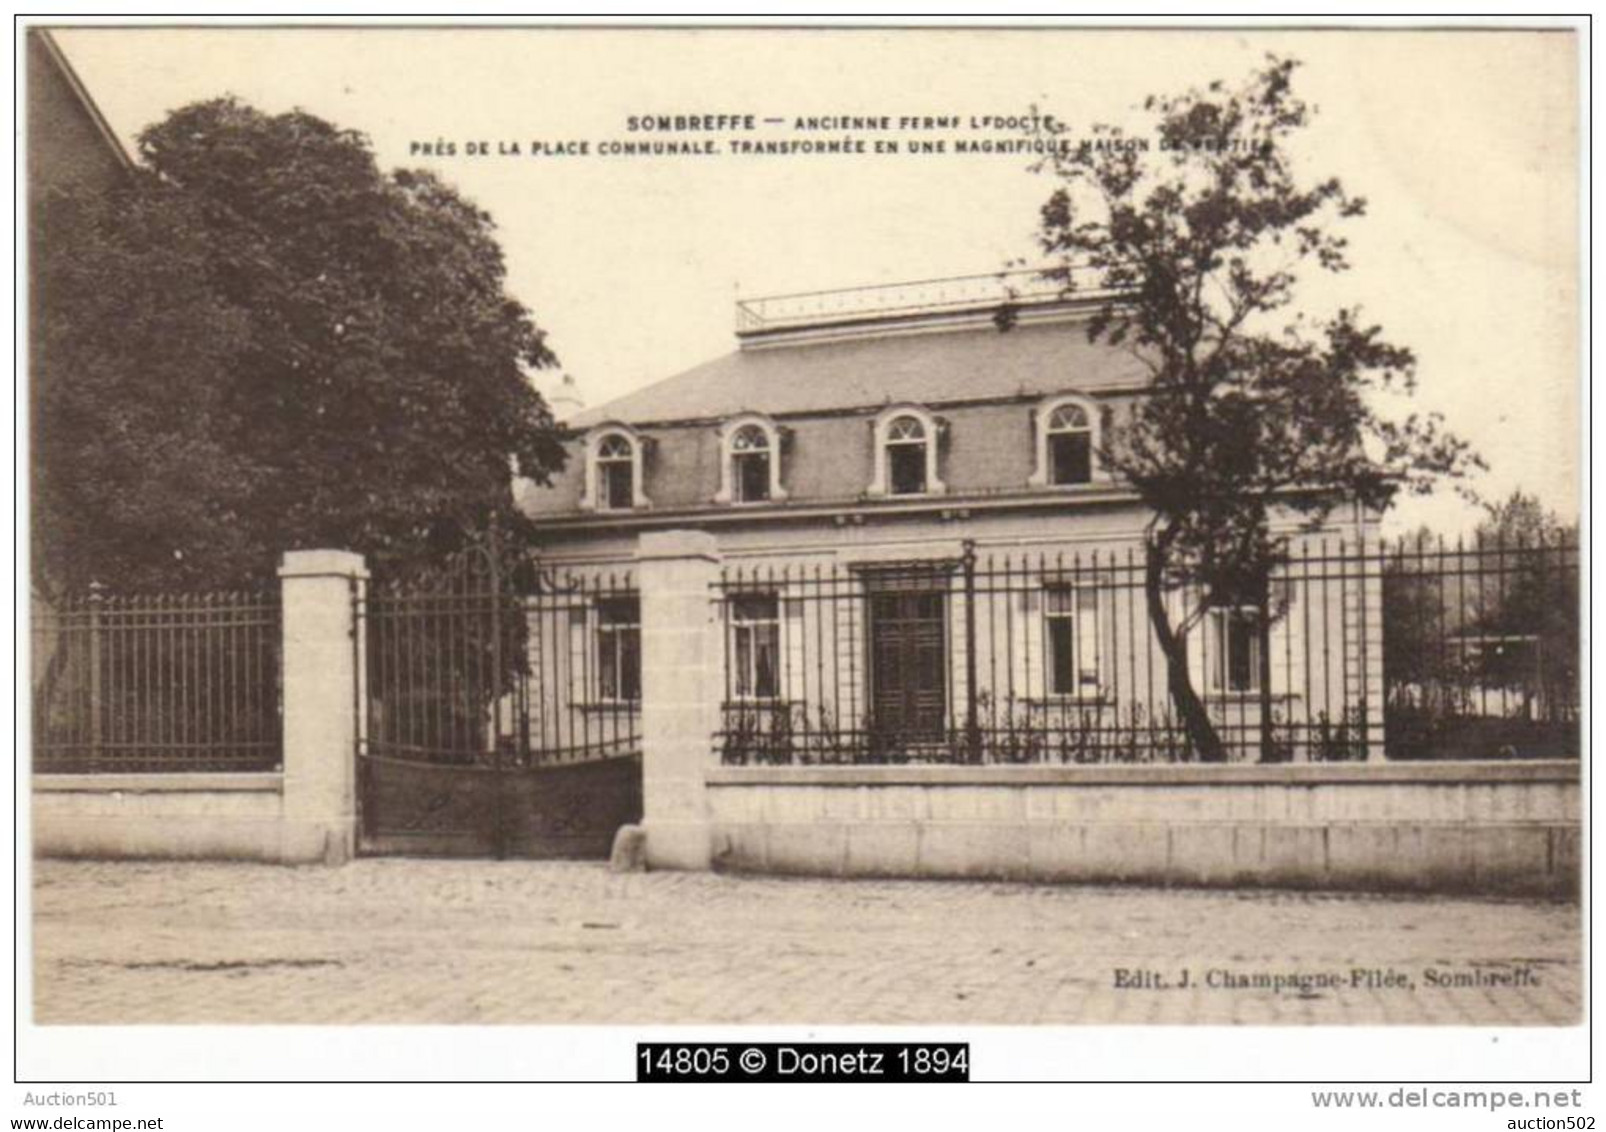 14805g Ancienne FERME LEDOCTE - Place Communale - Maison De Rentier - Sombreffe - Sombreffe